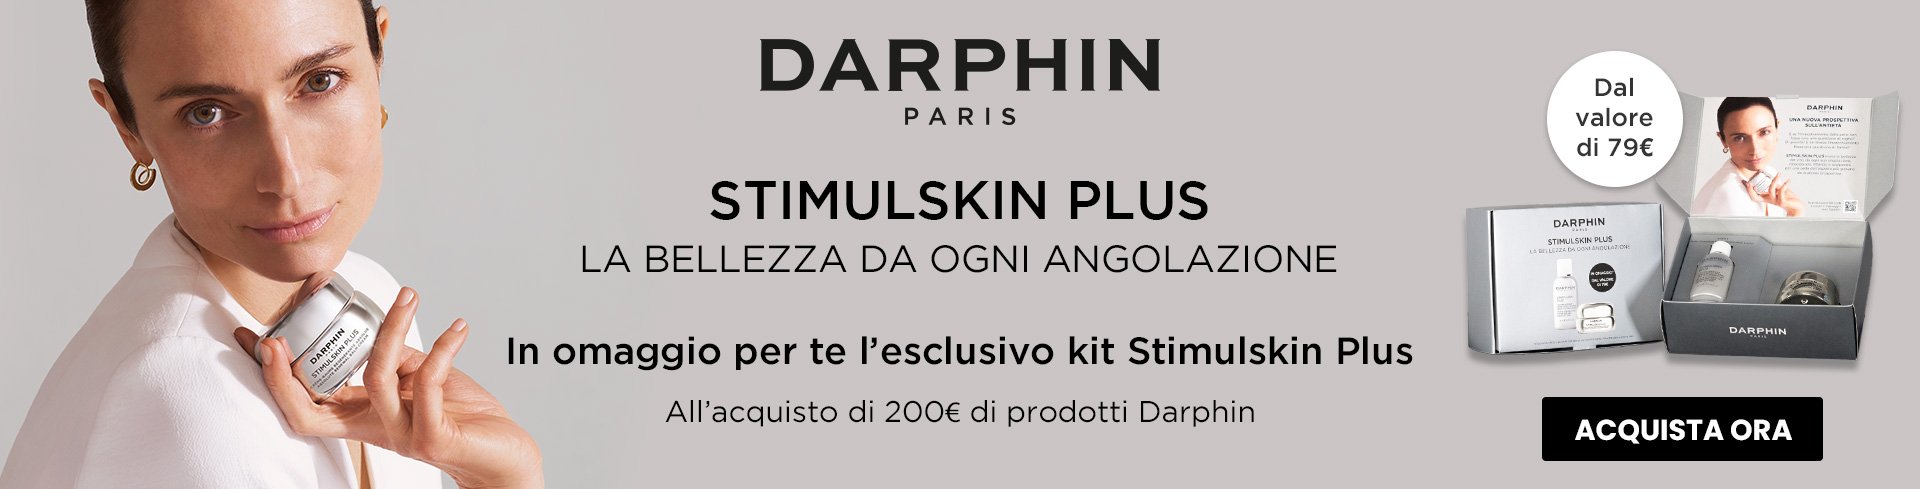 darphin stimulskin promo -> 21 aprile